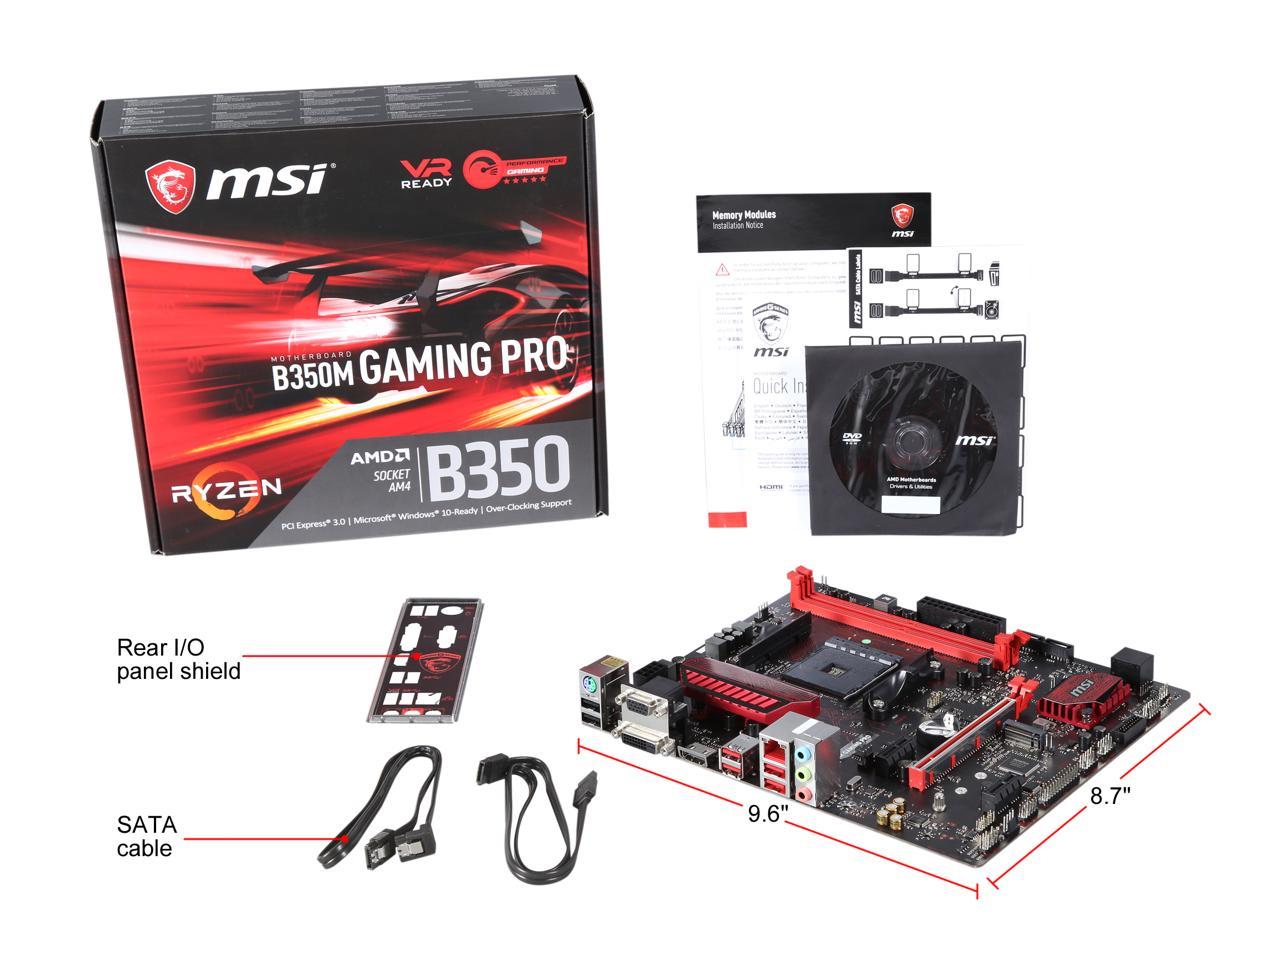 Msi b350m gaming pro. MSI a320m Gaming Pro. MSI b350m Gaming Plus. MSI b150a Gaming Pro.